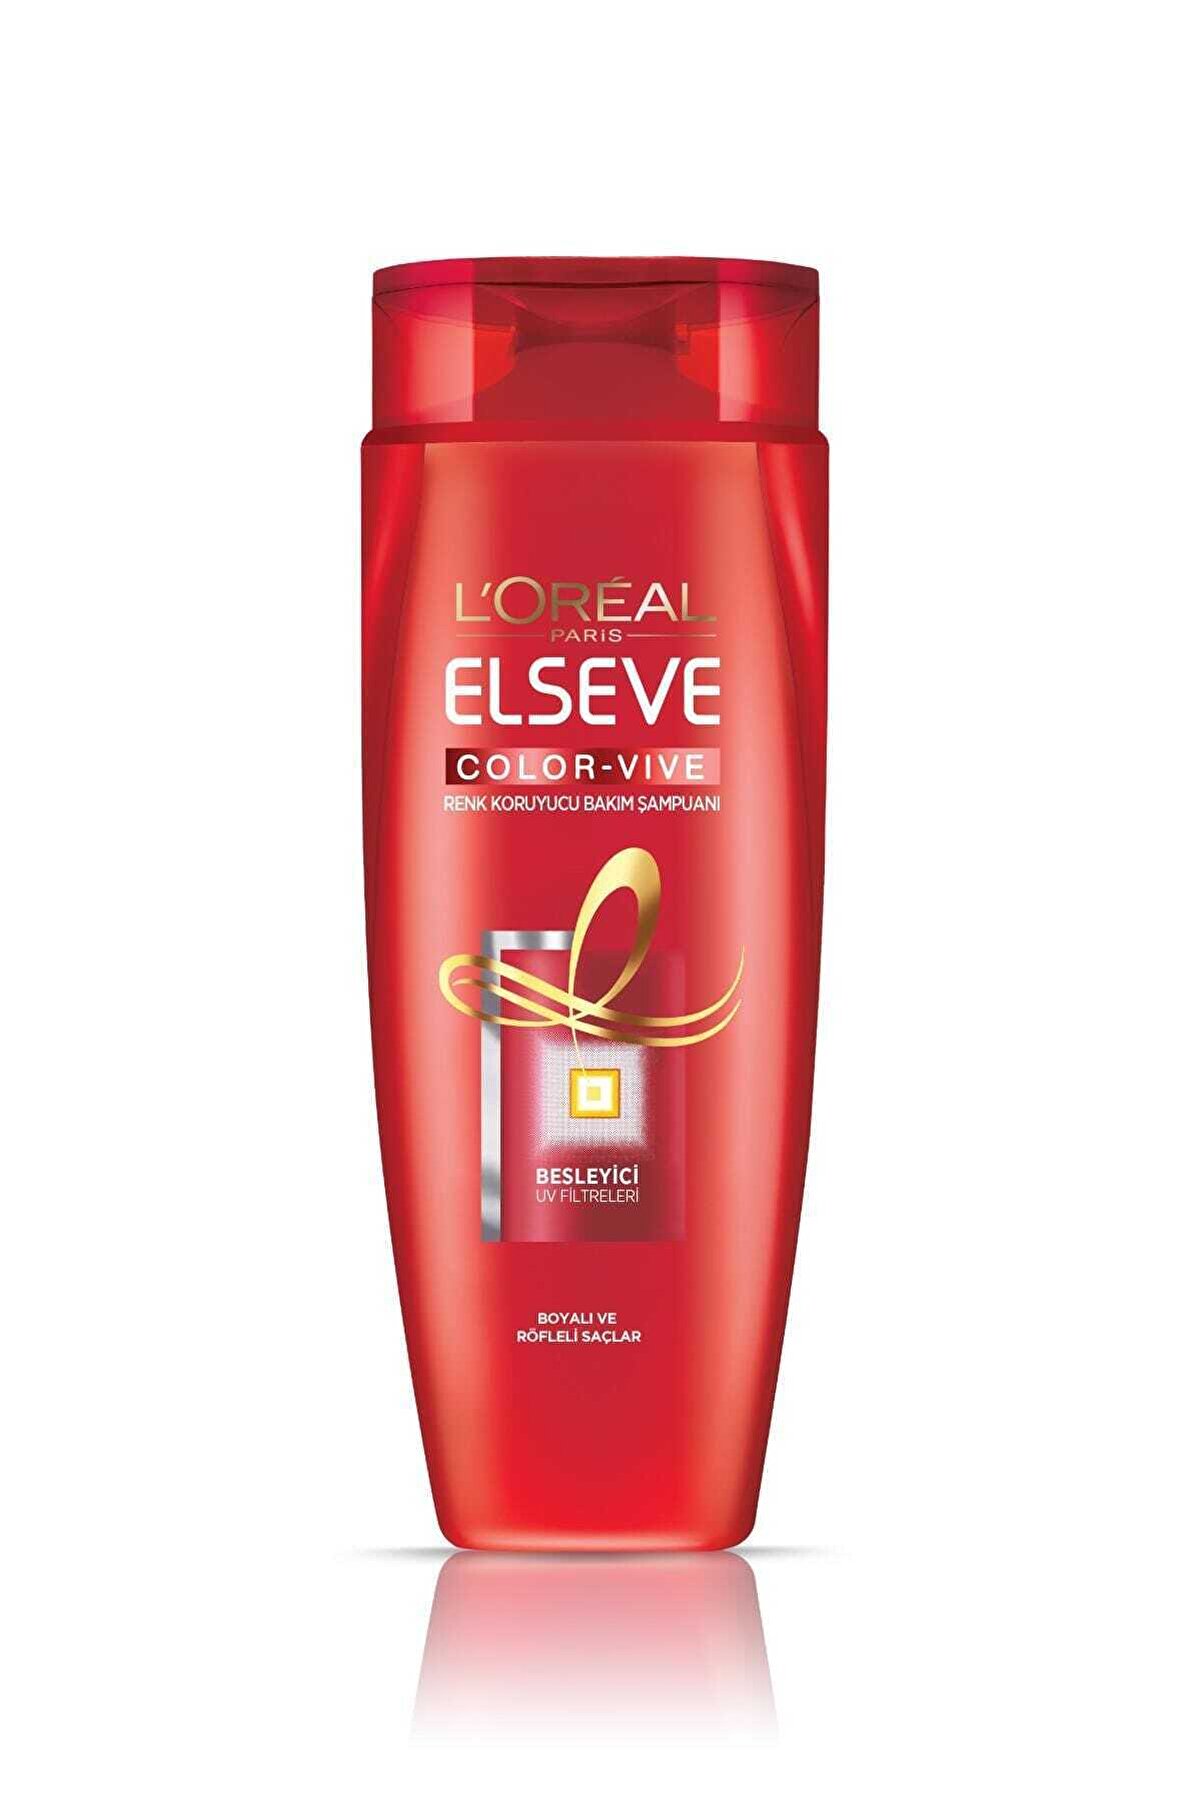 Elseve L'oréal Paris Colorvive Renk Koruyucu Bakım Şampuanı 520 ml